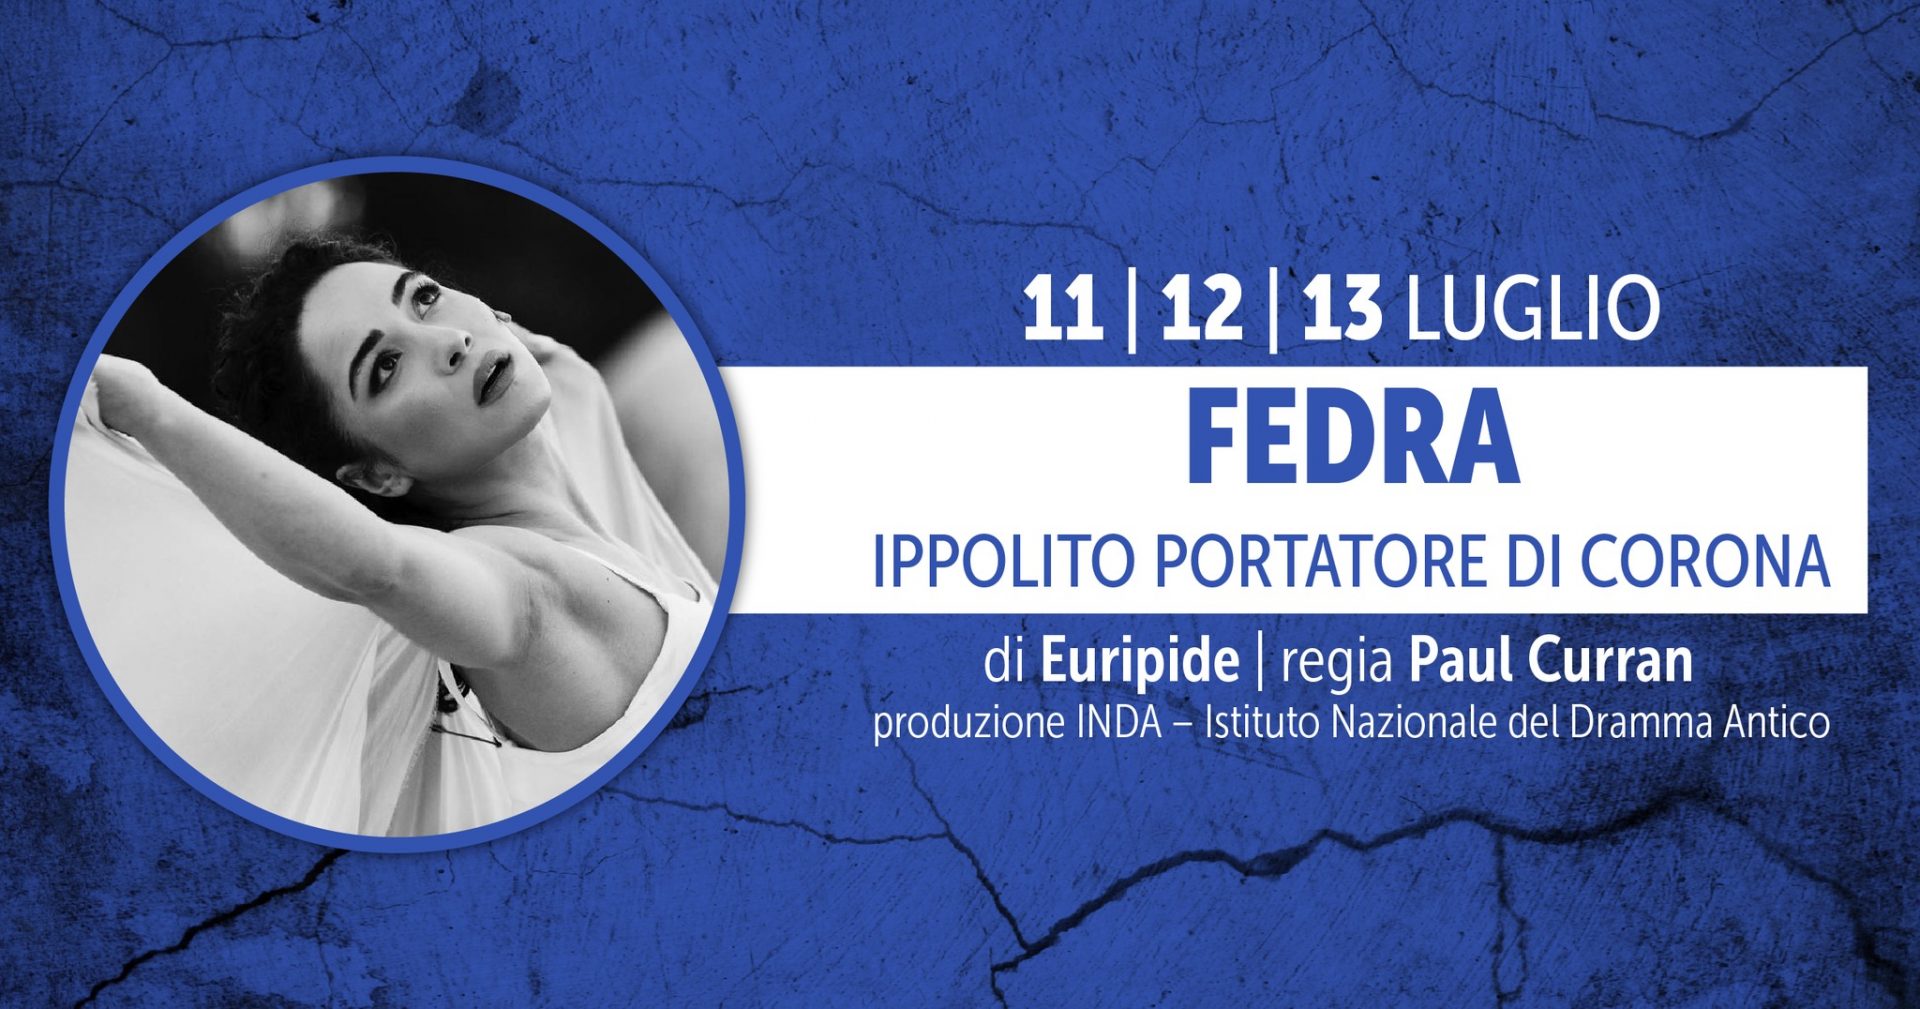 FEDRA – IPPOLITO PORTATORE DI CORONA -di Euripide, traduzione Nicola Crocetti, regia Paul Curran